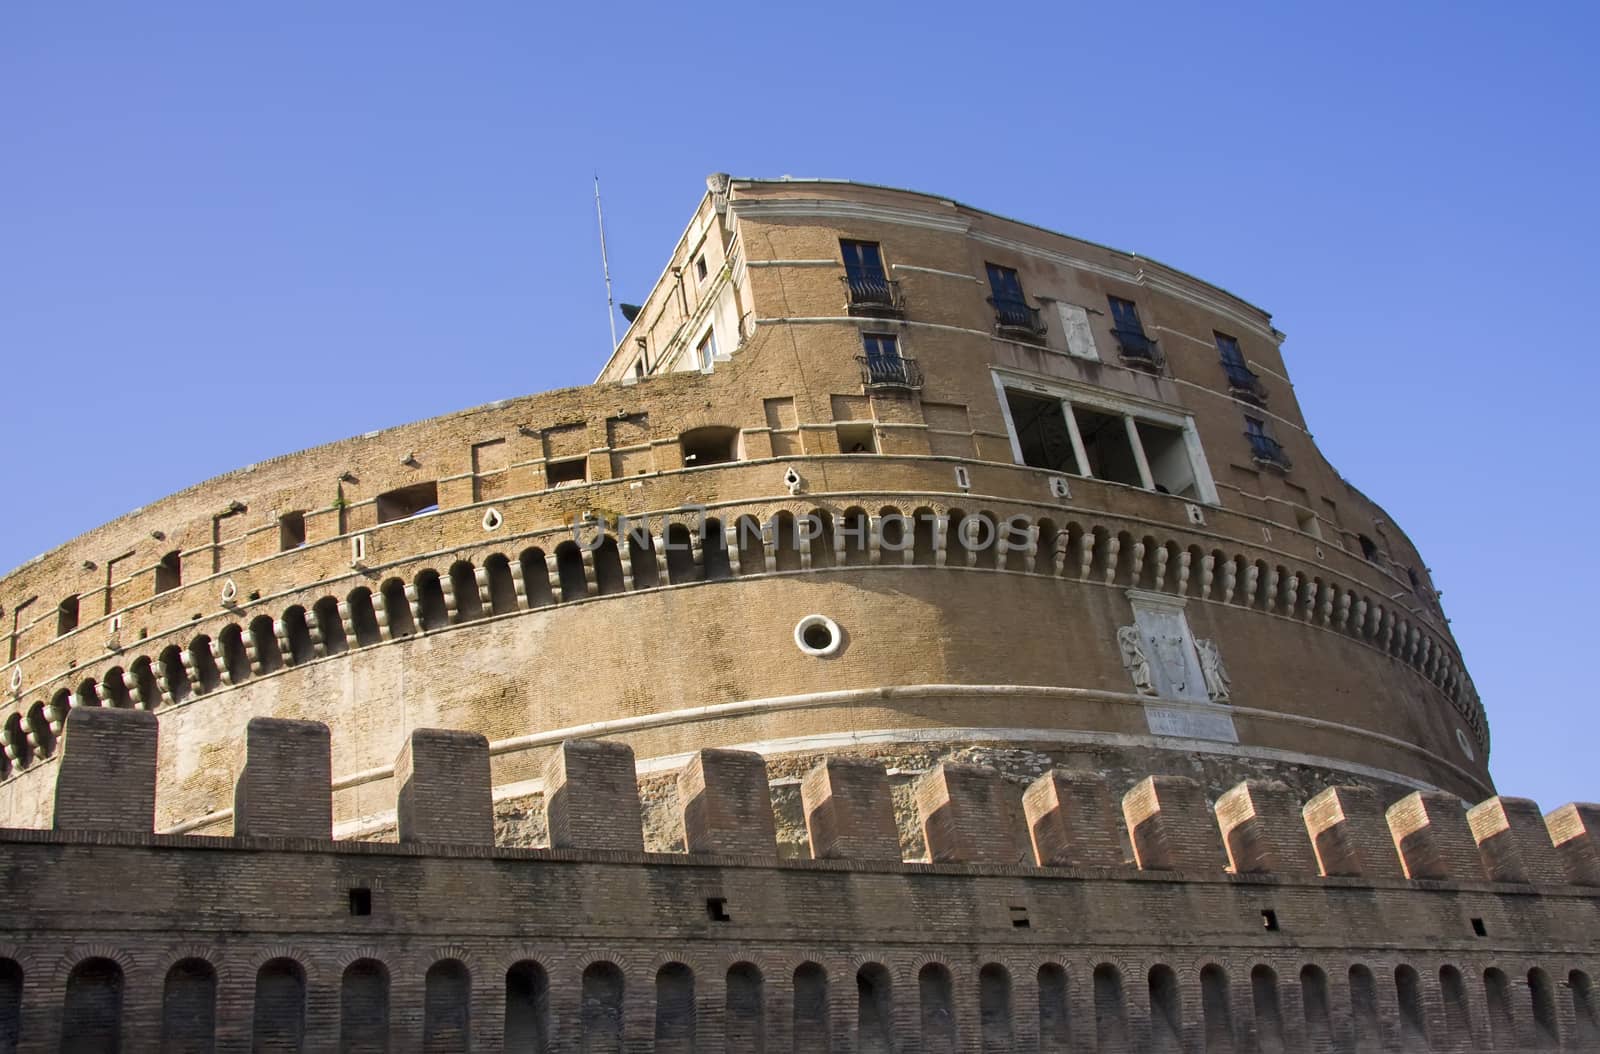 Side view of Castle Saint Angelo in Rome by fotoecho